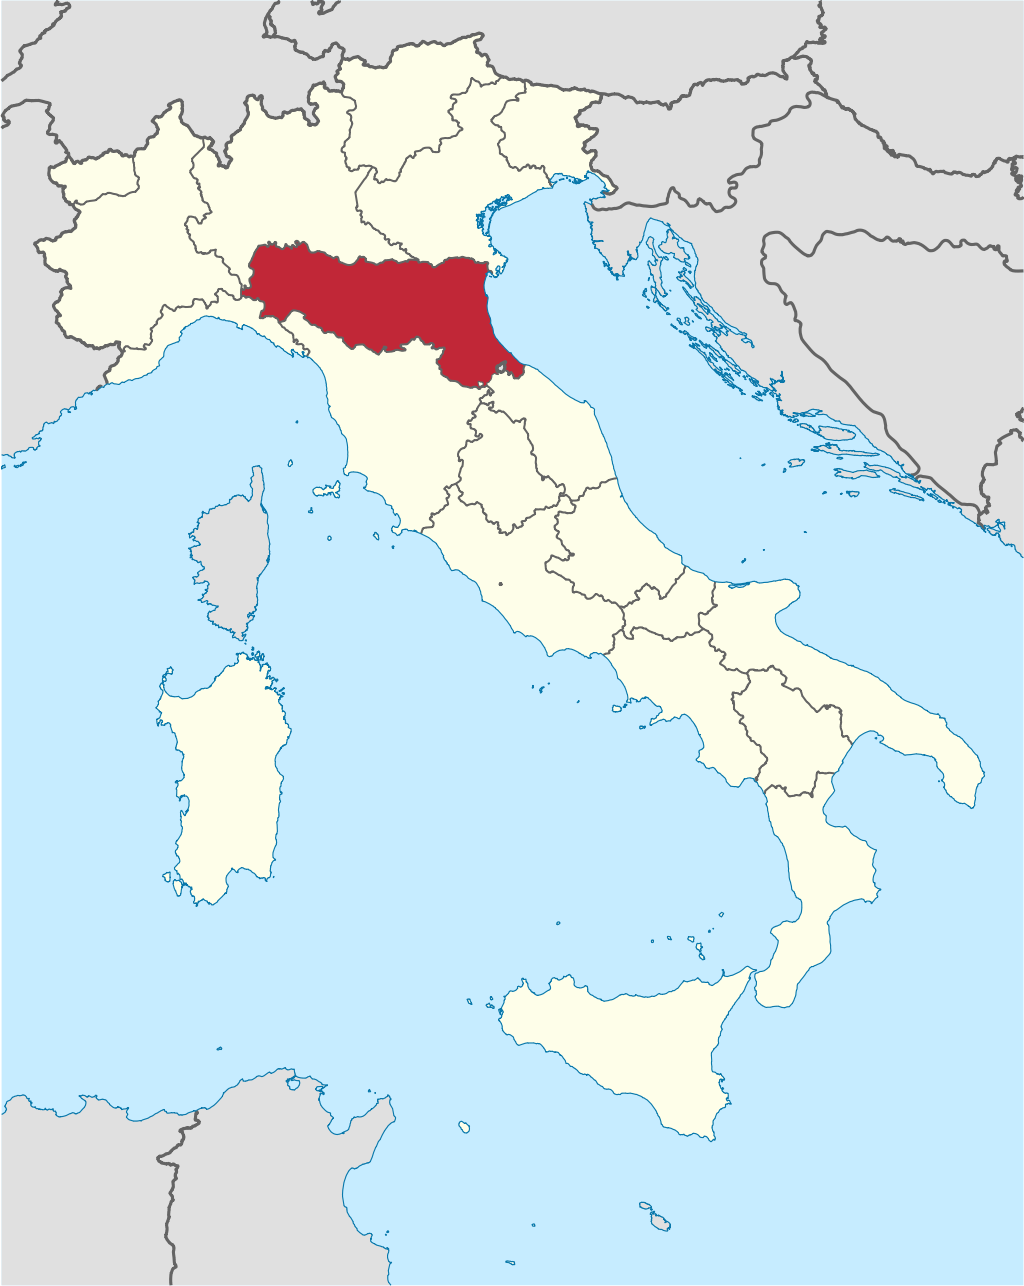 Catone Sanatorium Urbex location or around the region Emilia-Romagna (Bologna), Italy